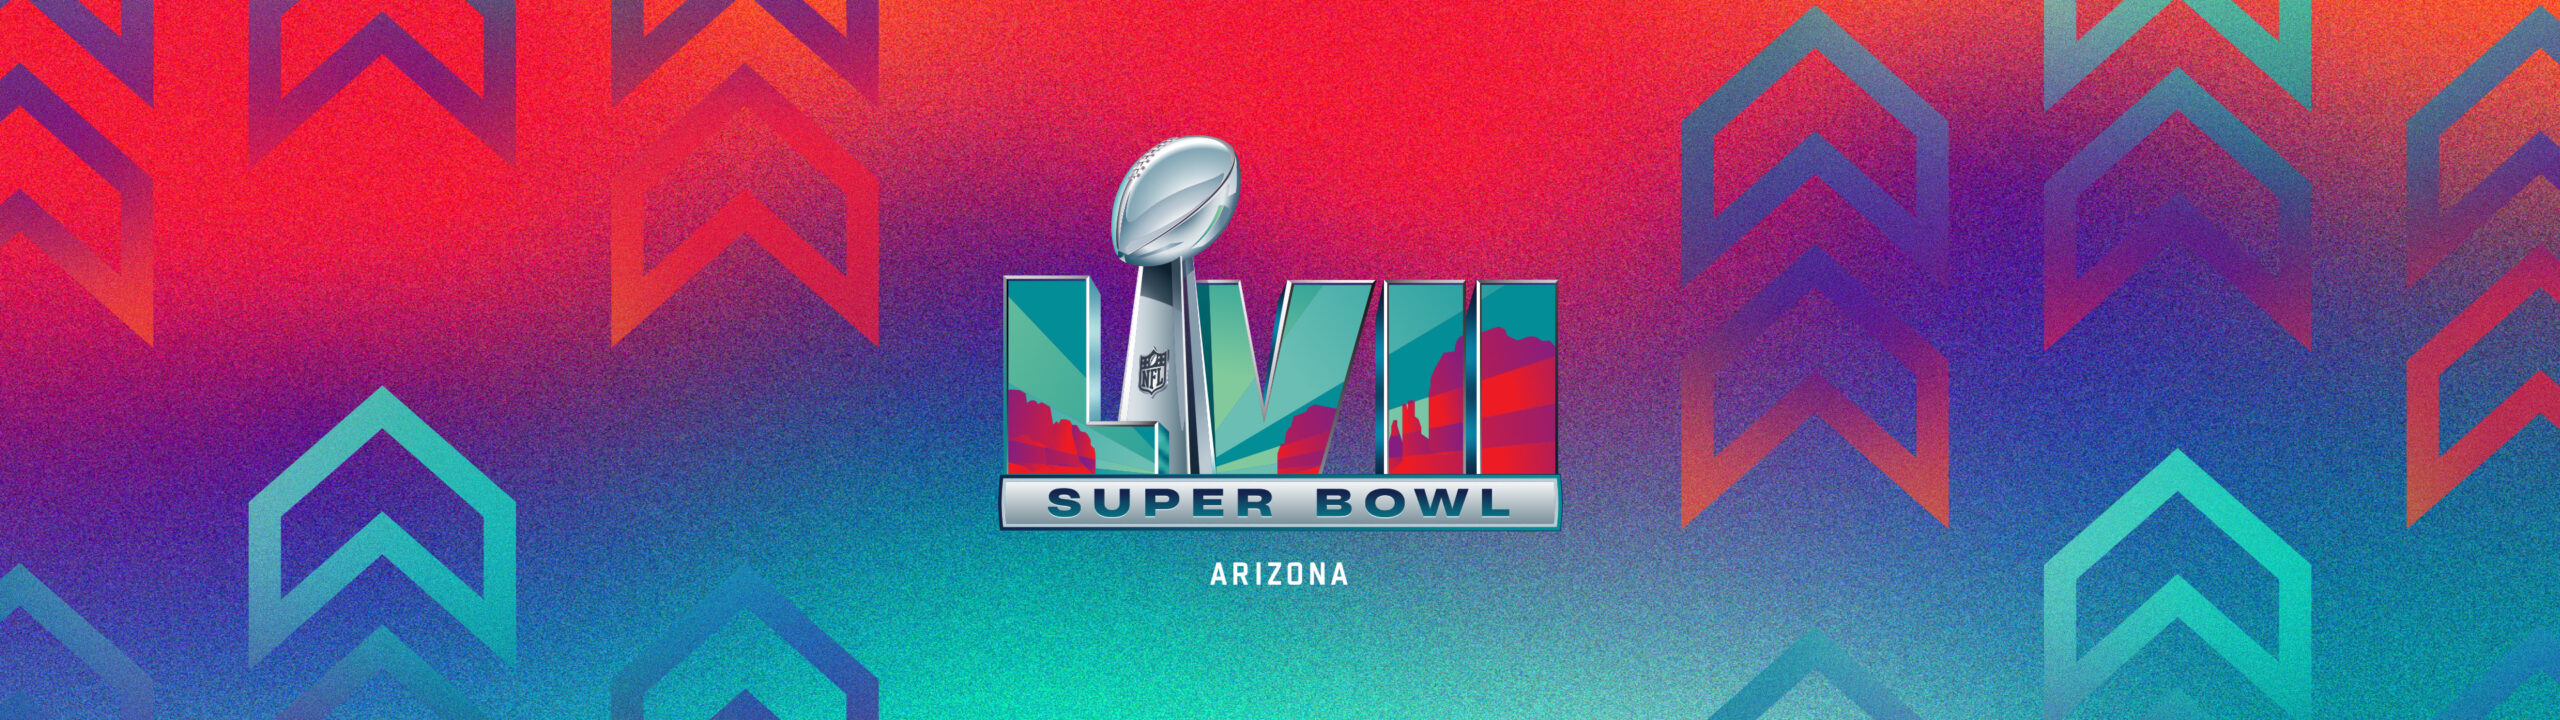 Super Bowl Schedule